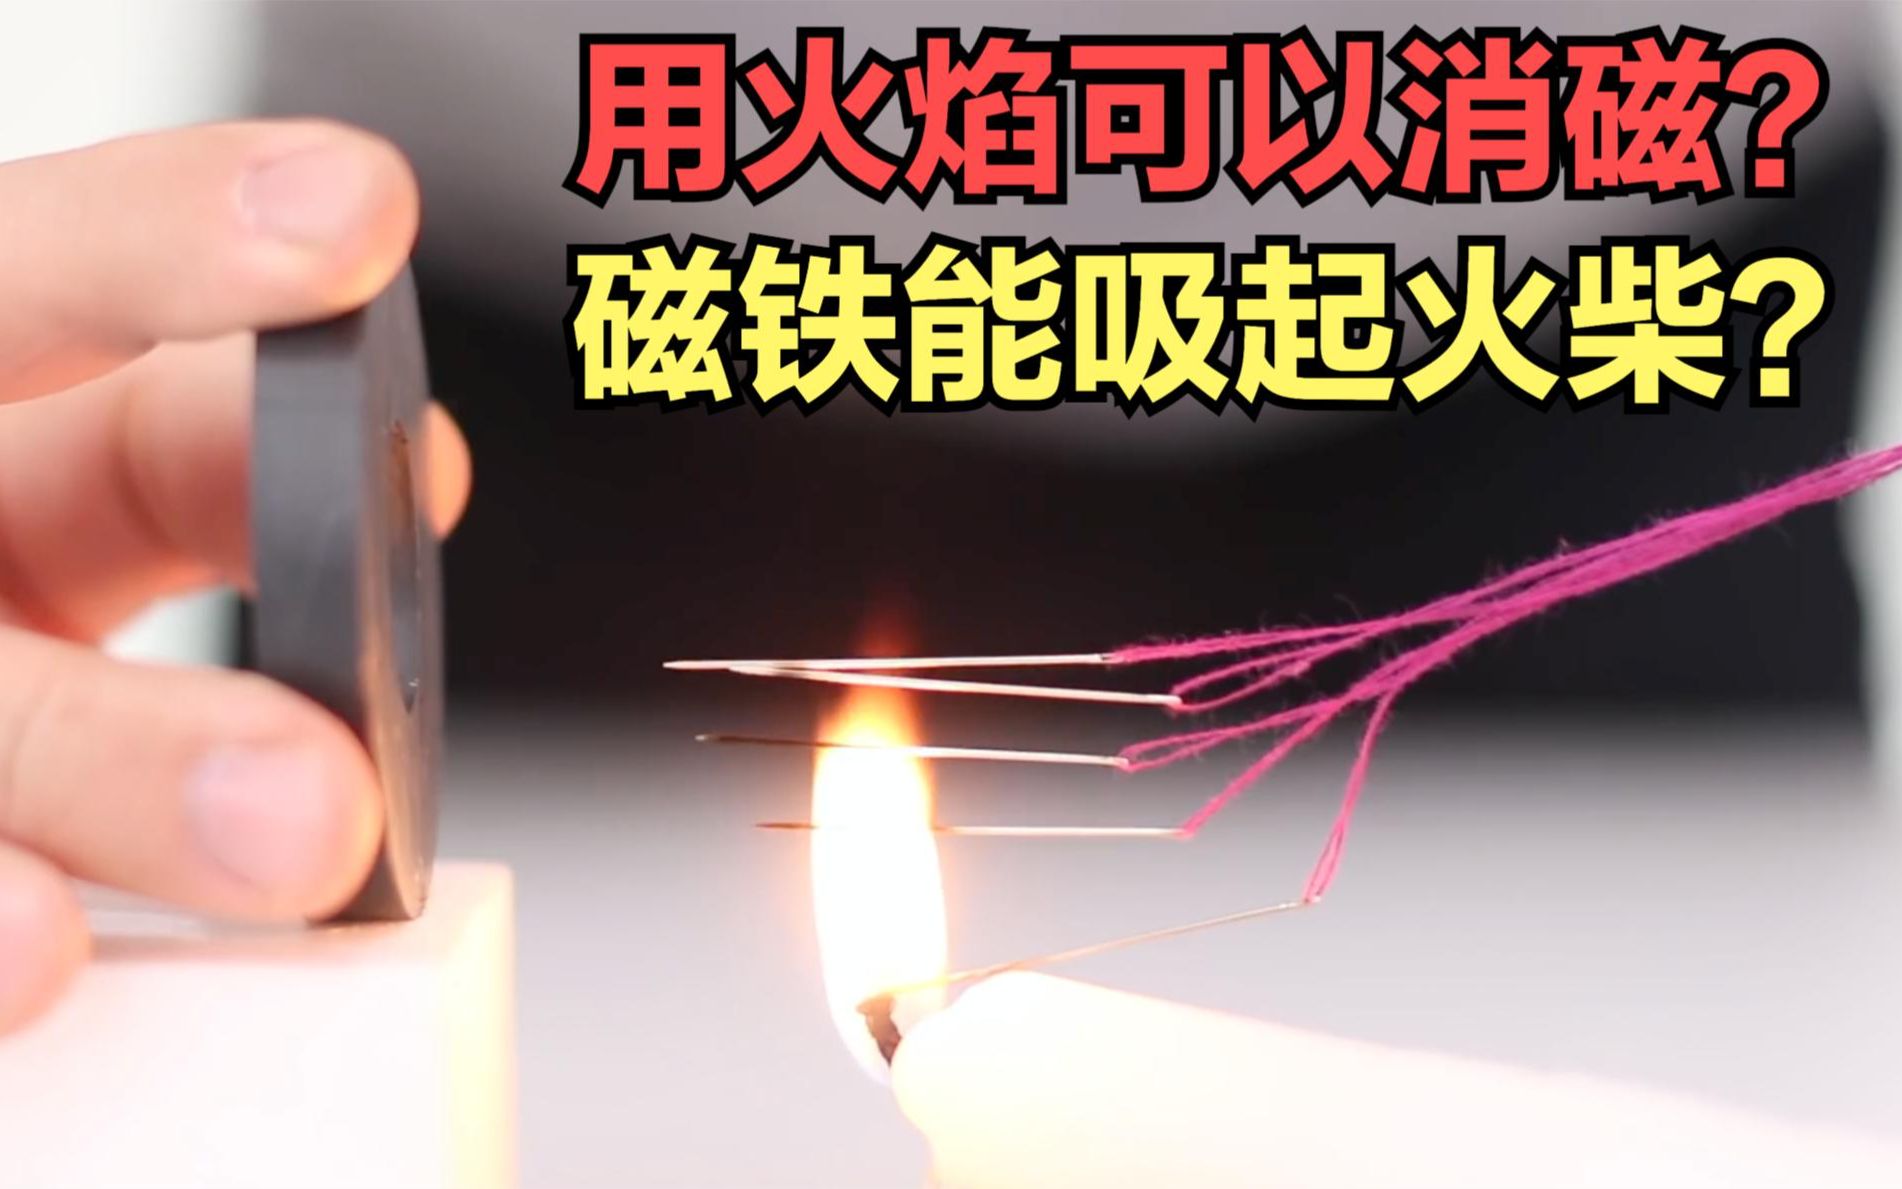 为什么火焰可以消磁？为什么磁铁能把火柴吸起来？